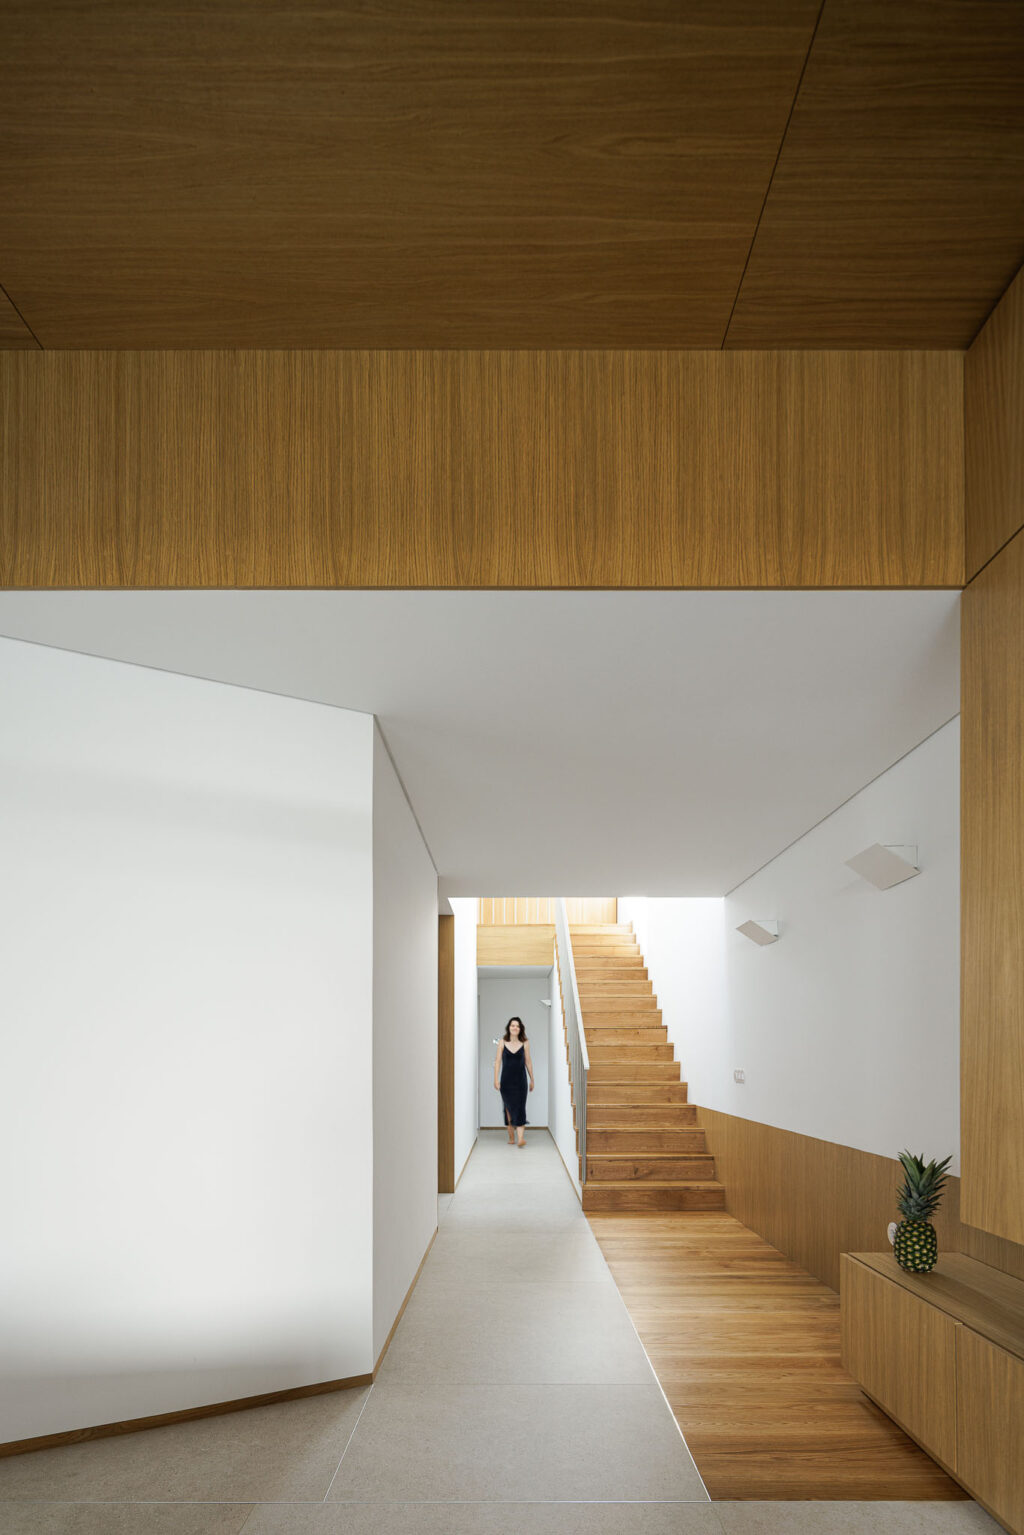 Eine Architektur, die Konventionen herausfordert und emotionale Räume schafft. Forte House von Pema Studio